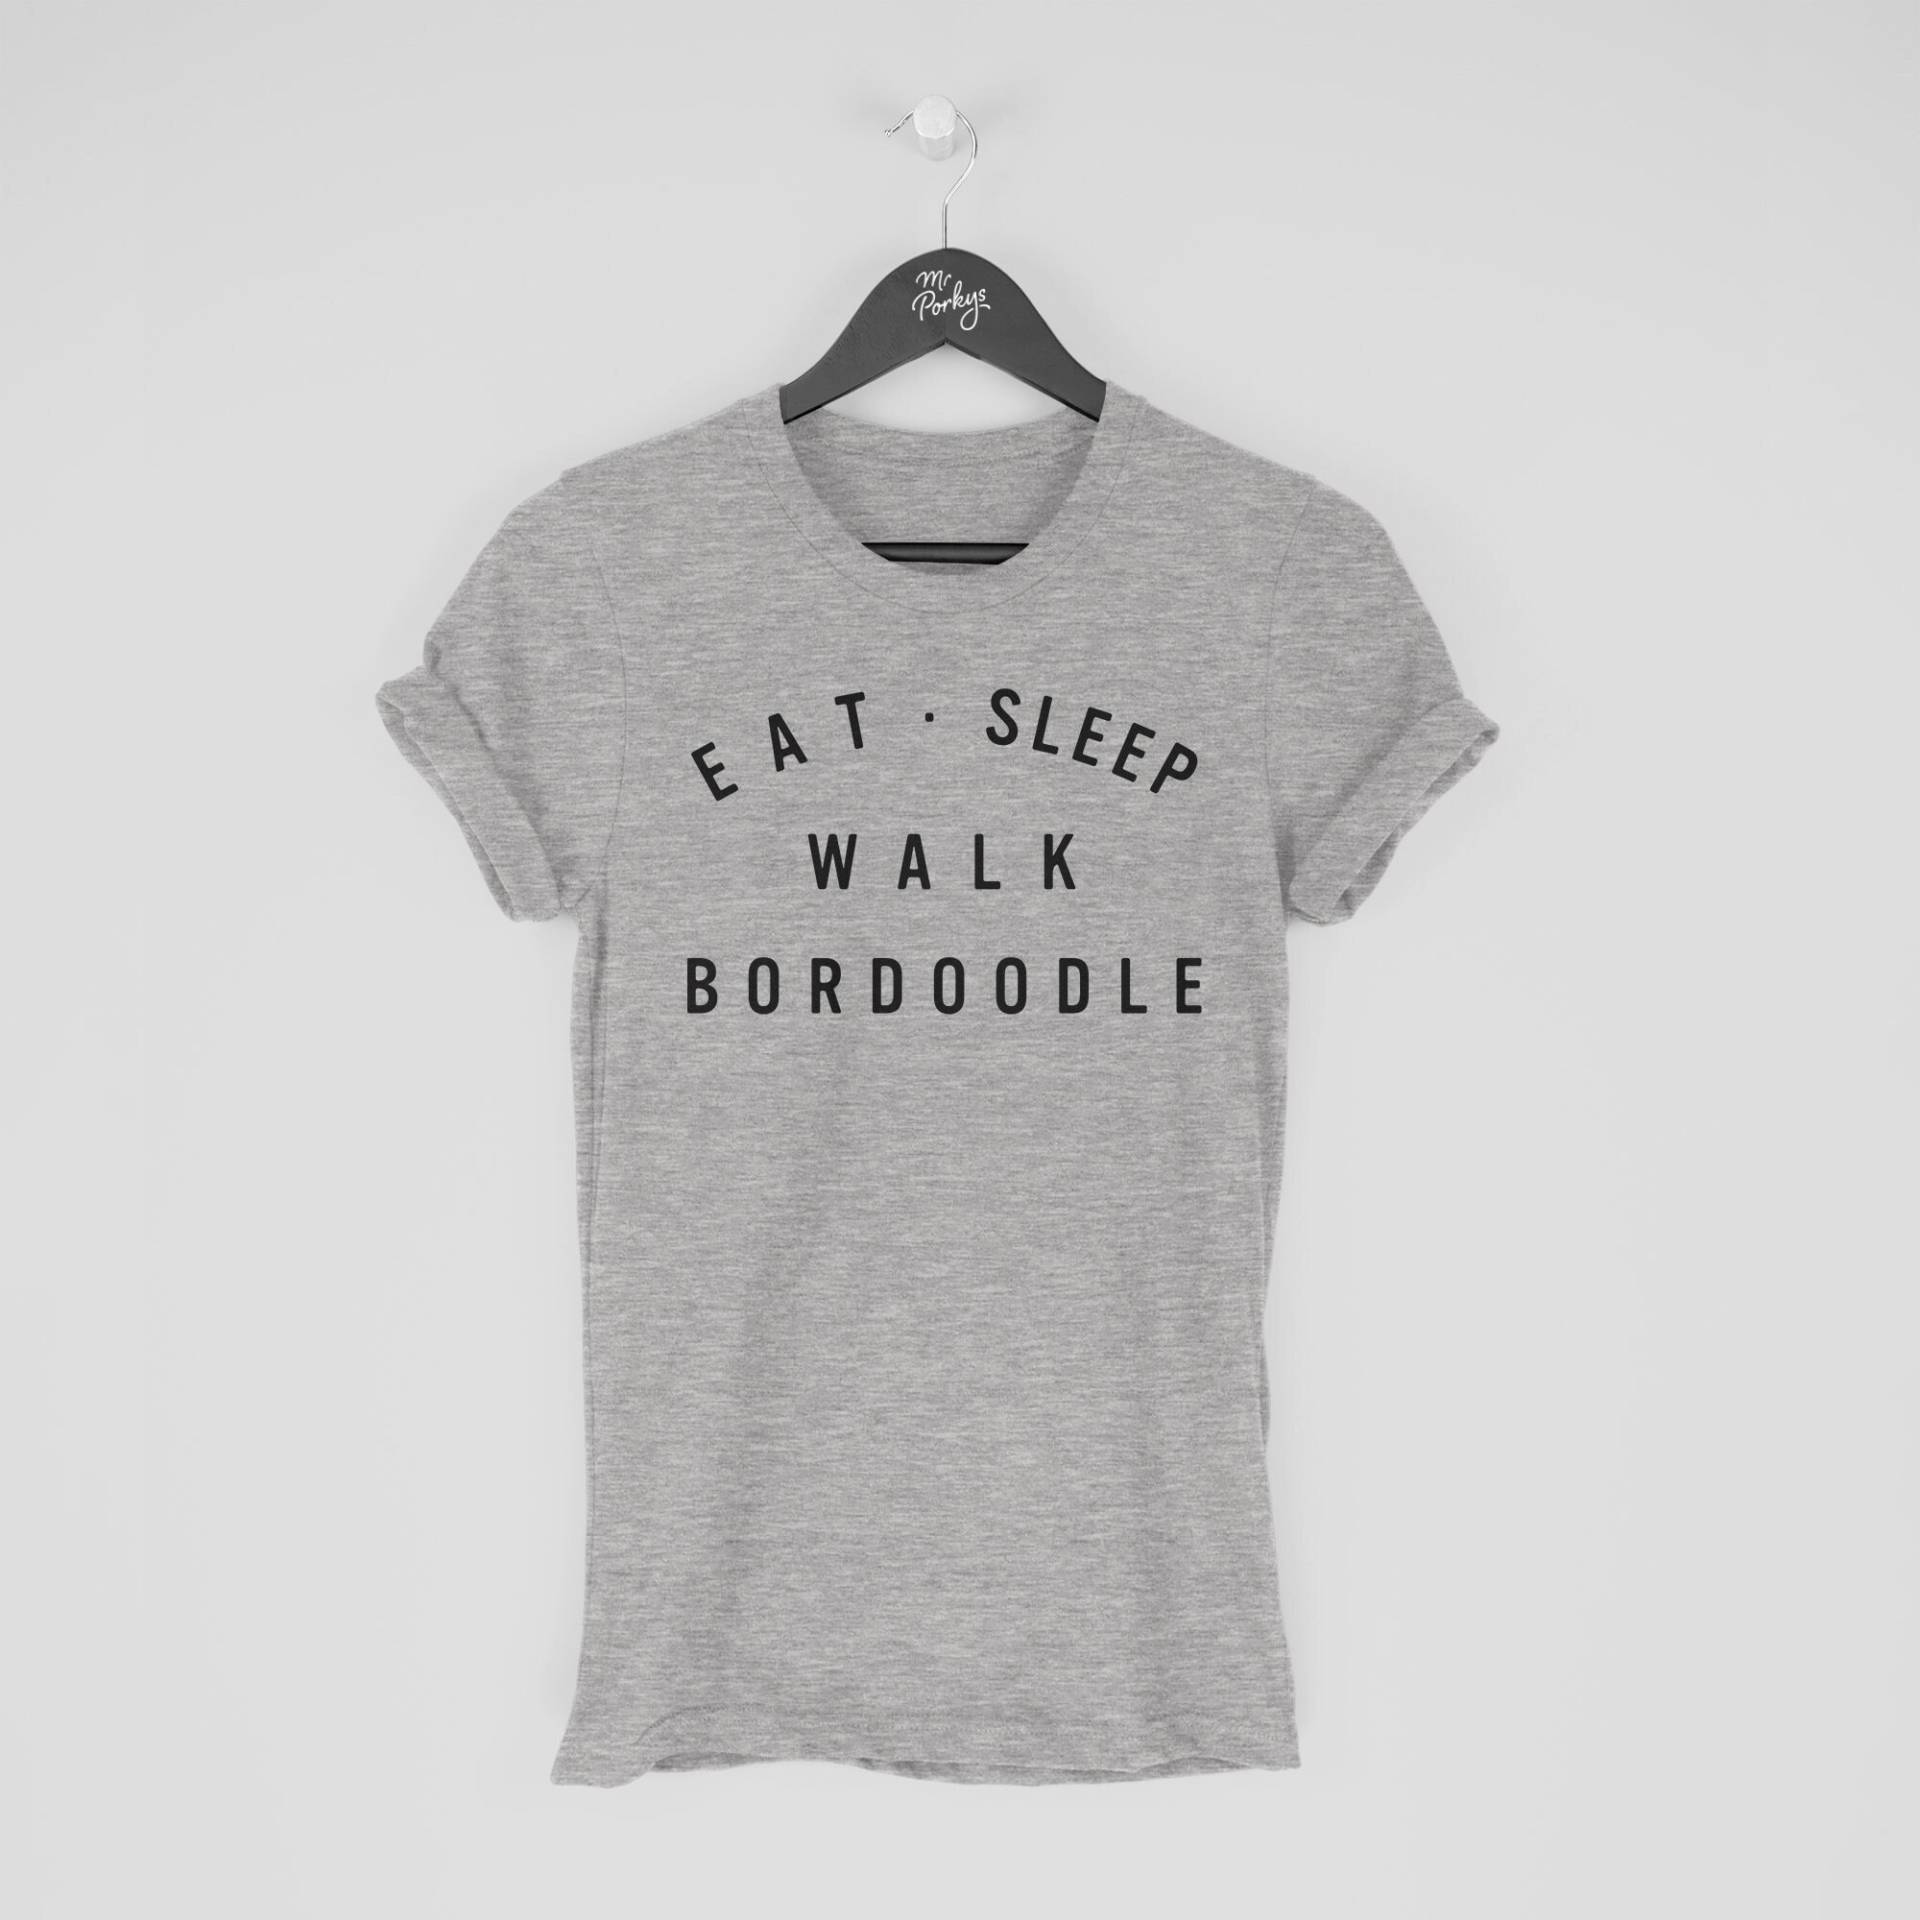 Bordoodle Shirt, Eat Sleep Walk T-Shirt, Geschenk Für Besitzer, Tshirt von MrPorkysGiftShop